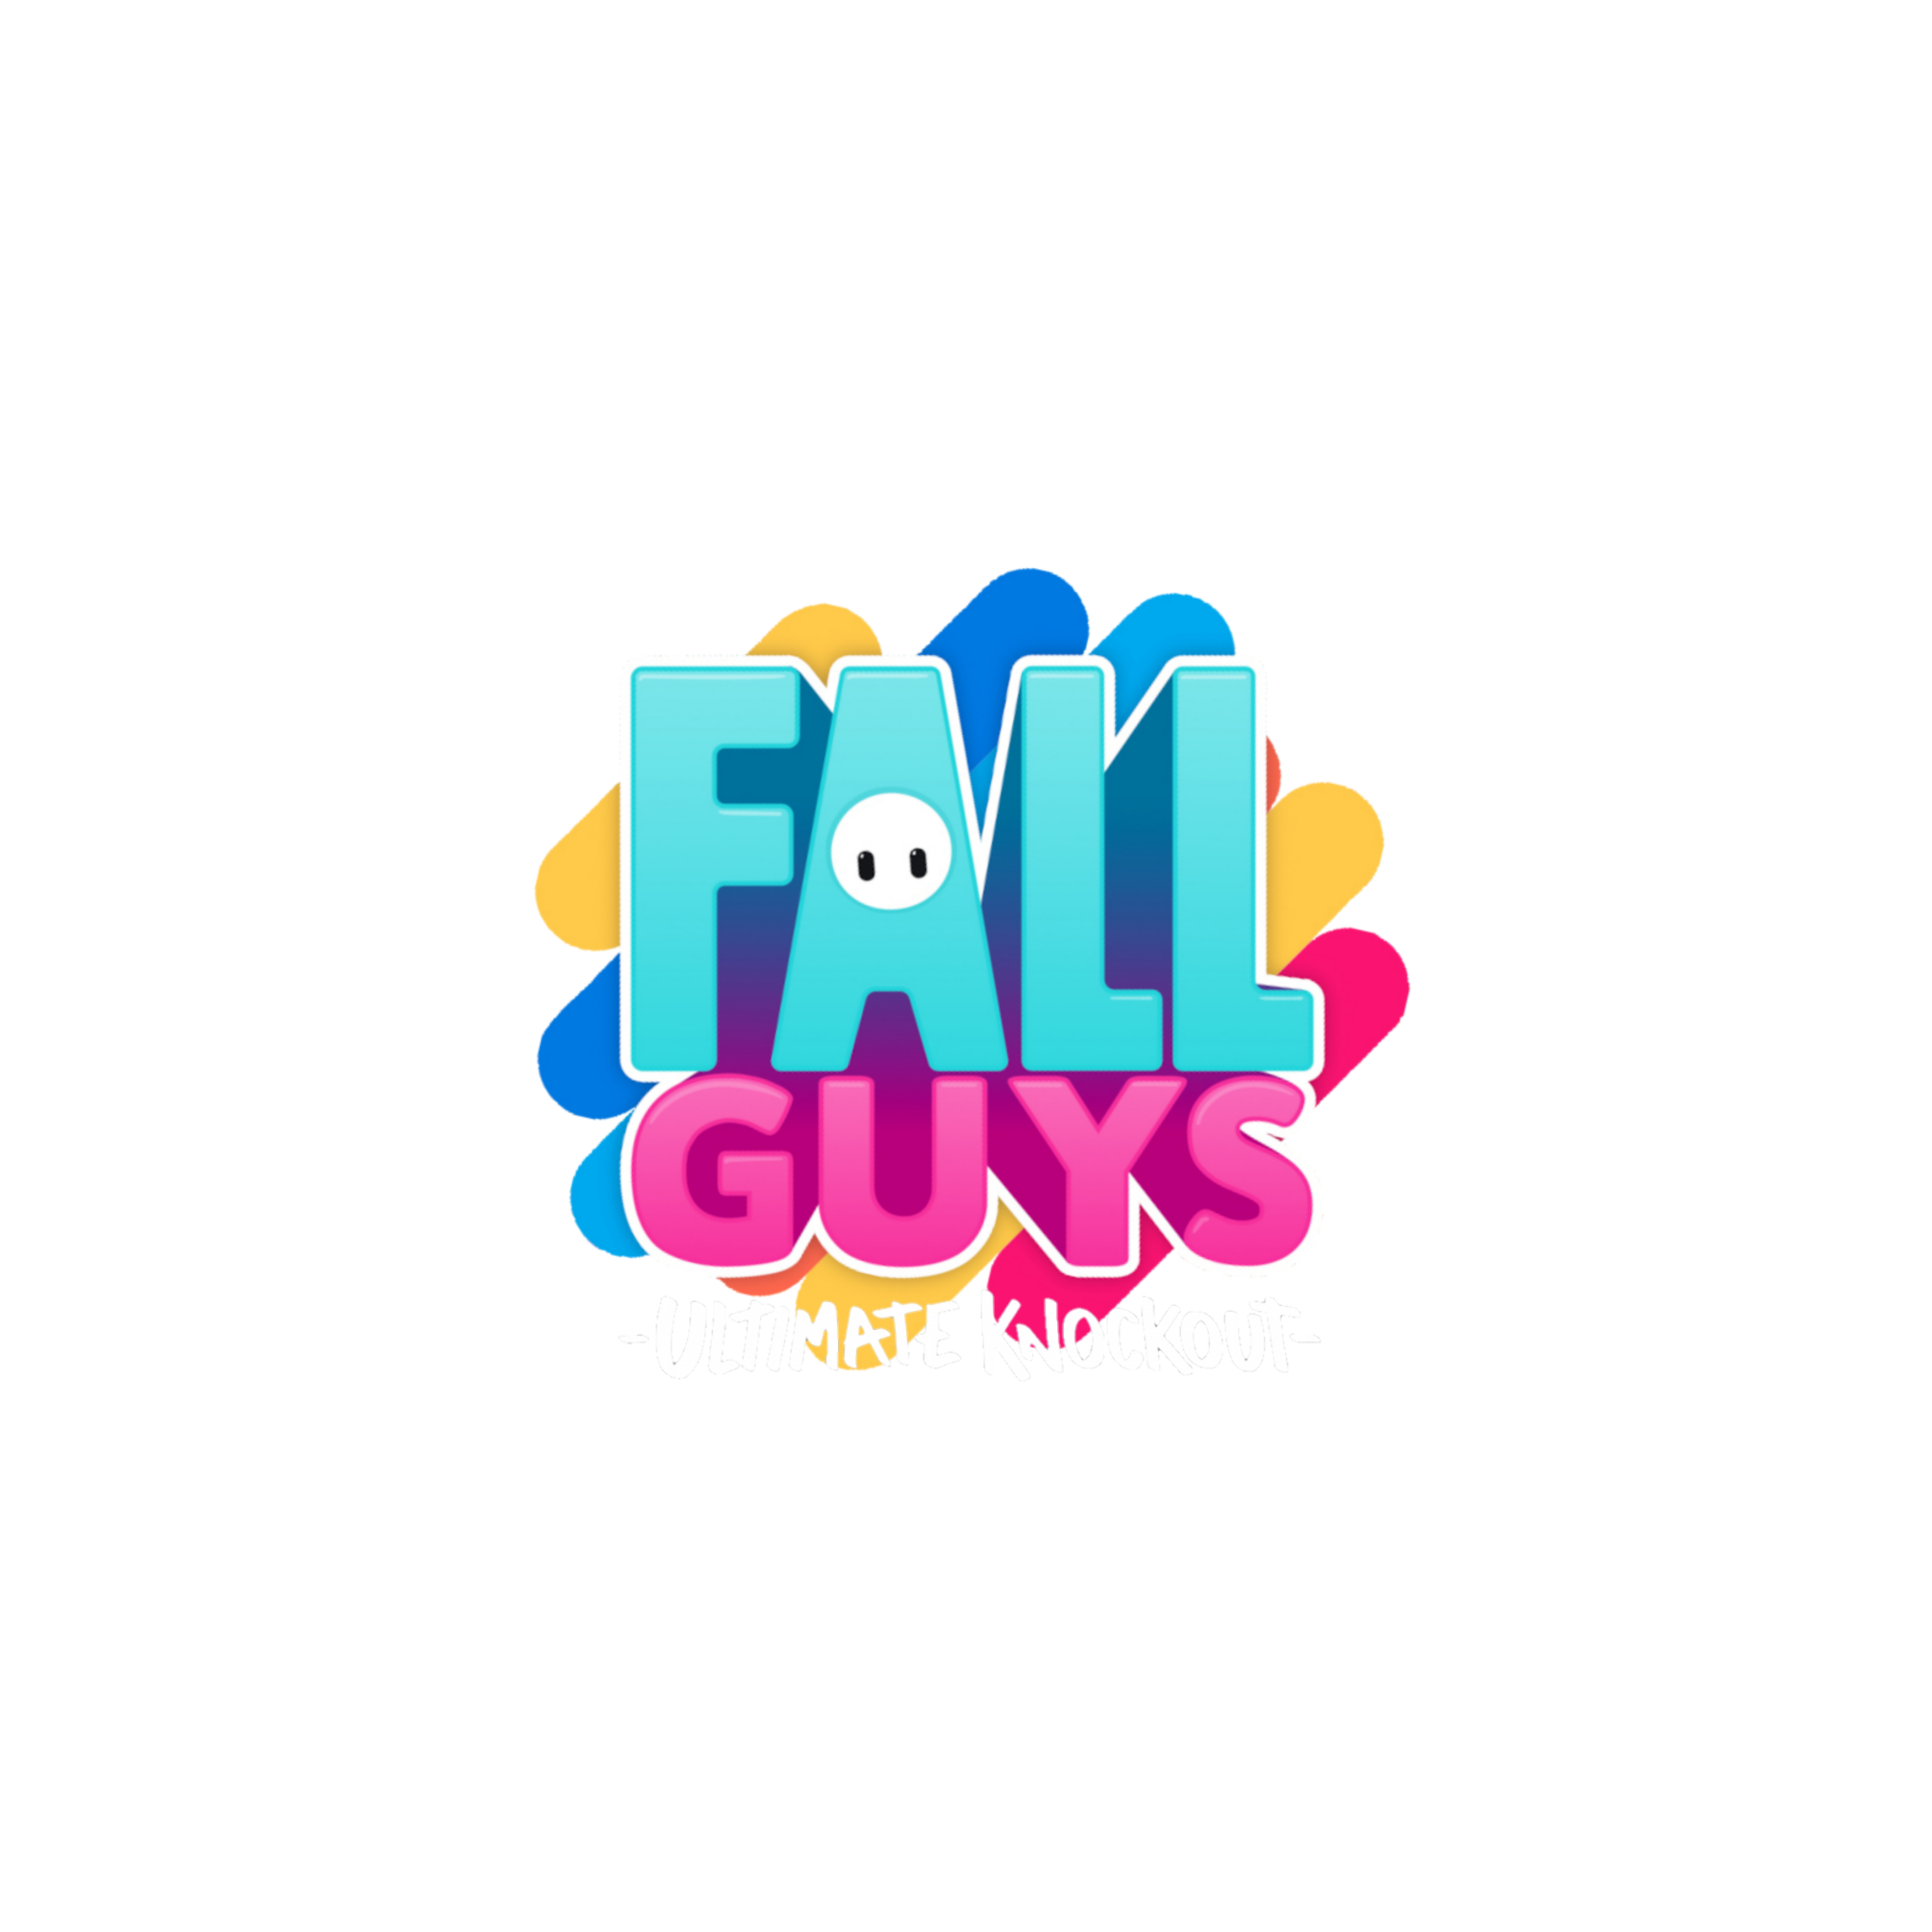 Fall Guys Logo PNG Image File